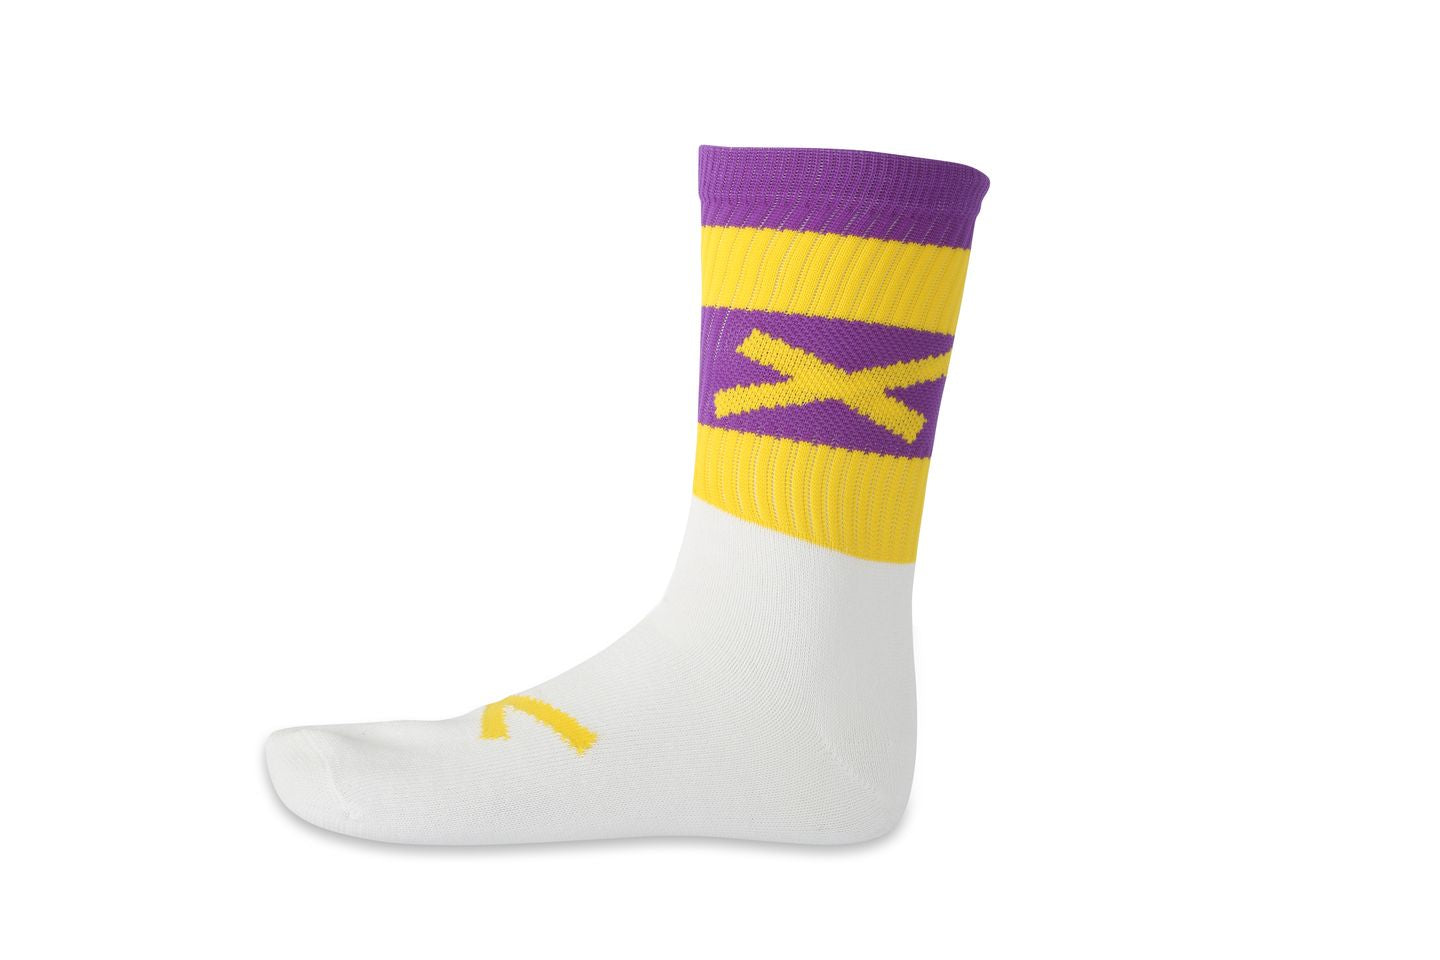 Midi X Gaelic games Socks